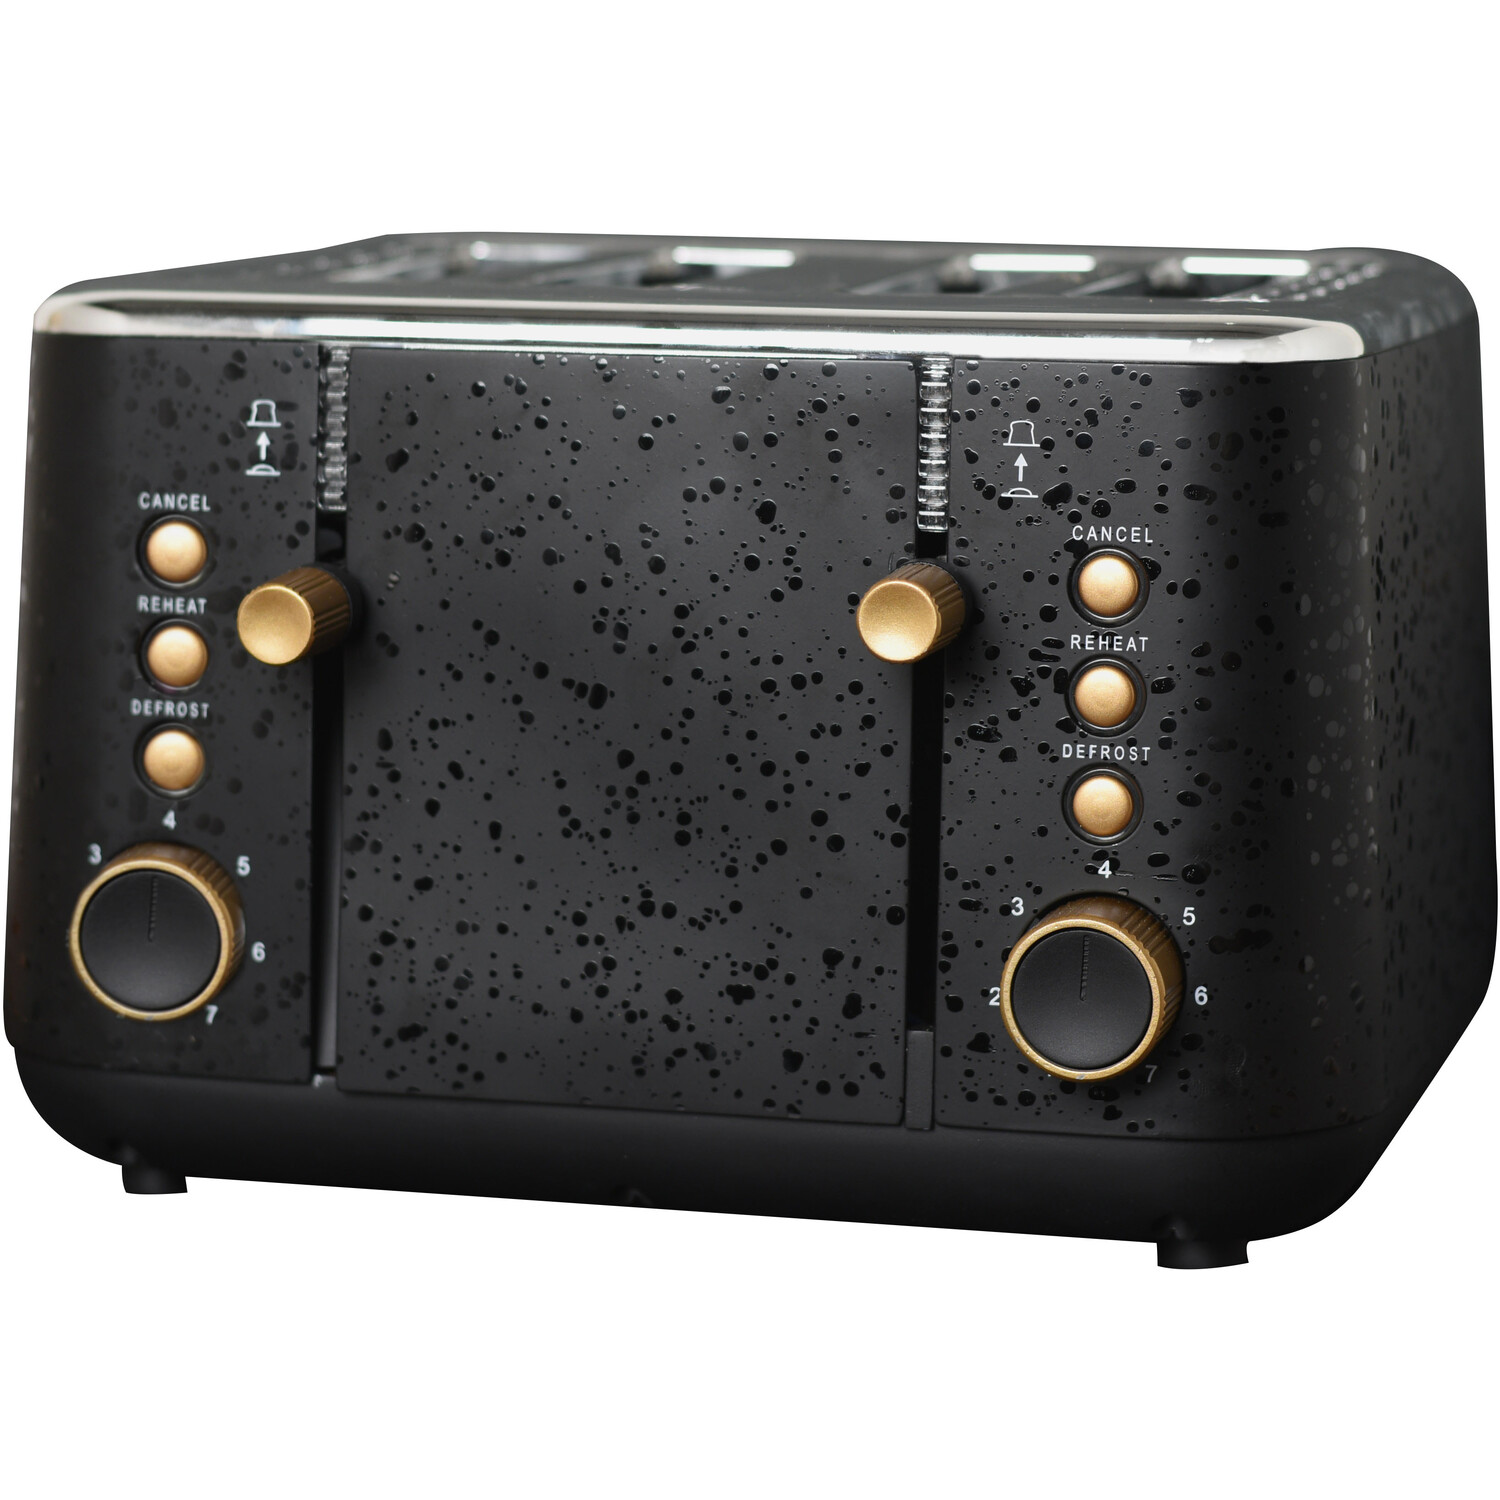 Kaiseki Black Four Slot Toaster Image 1